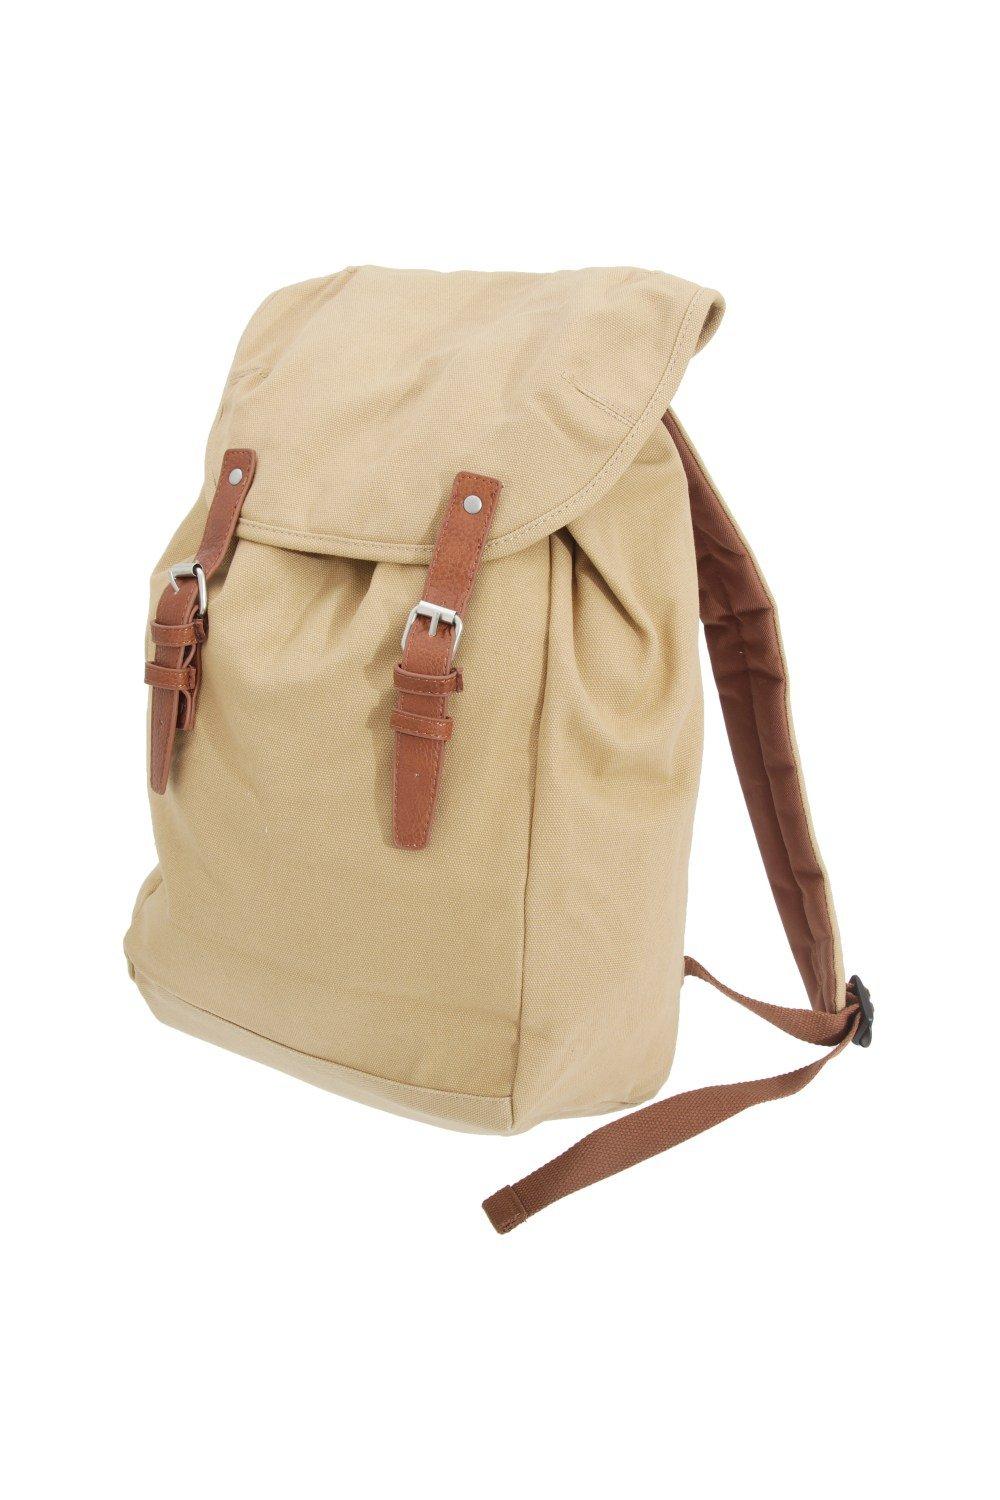 Винтажный рюкзак-рюкзак Quadra, коричневый винтажный противоугонный рюкзак коричневый